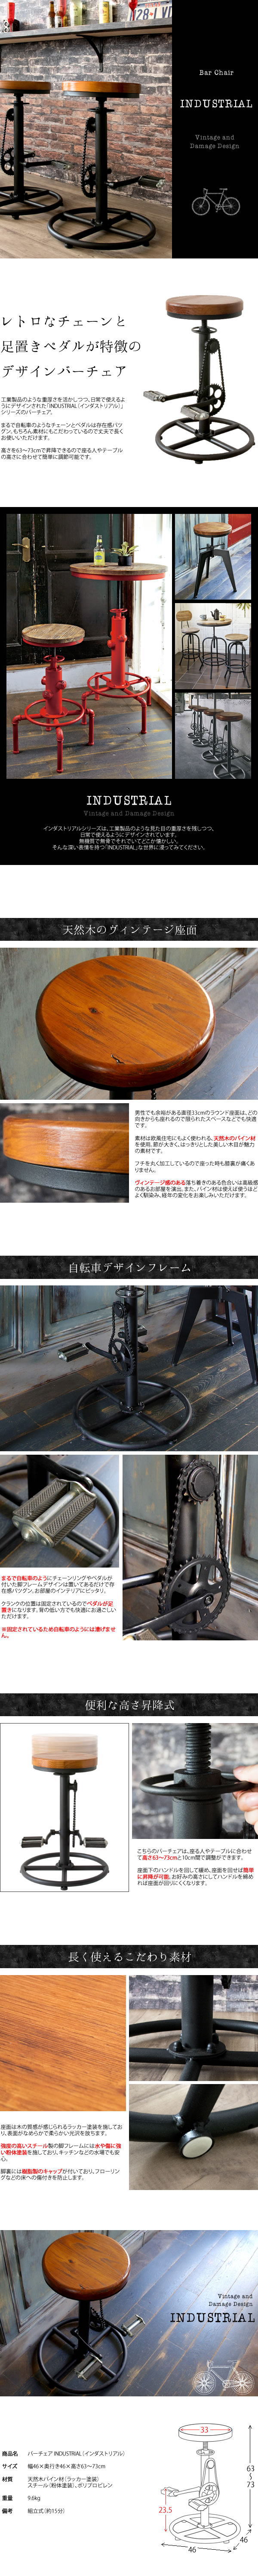 信頼779A4 インダストリアル自転車バーチェア■男前スツール椅子カウンター(検 展示品アウトレット展示処分品 西洋